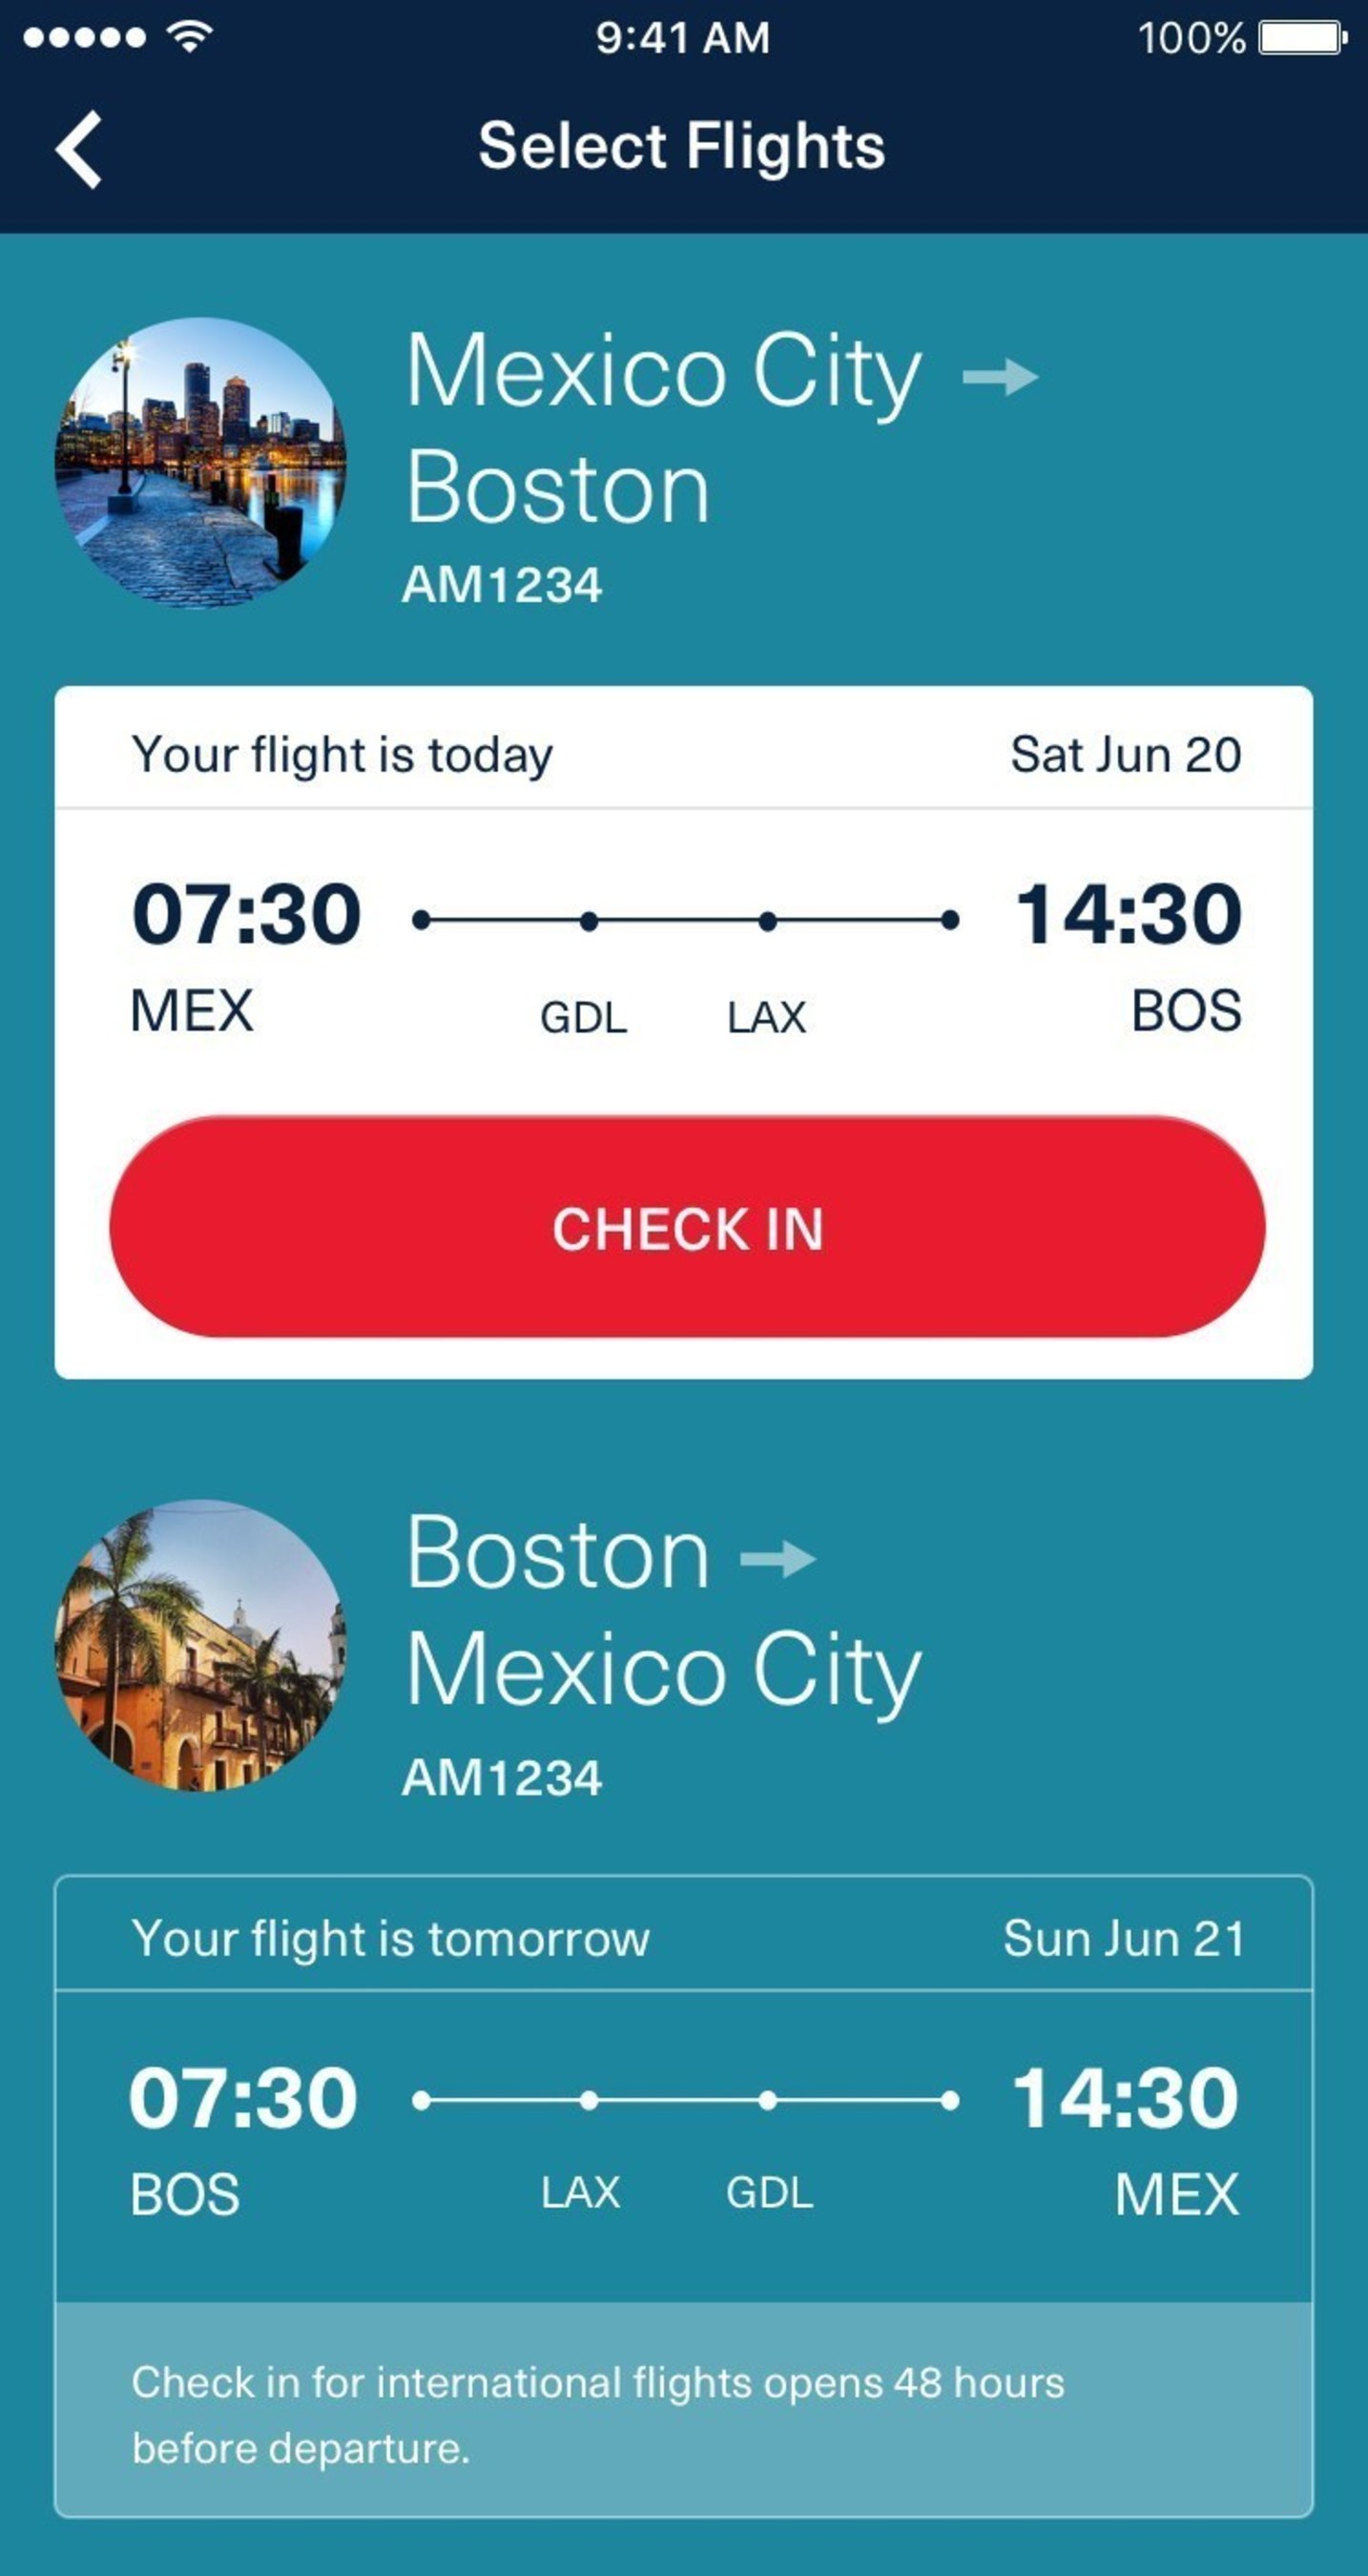 Aeromexico's mobile app